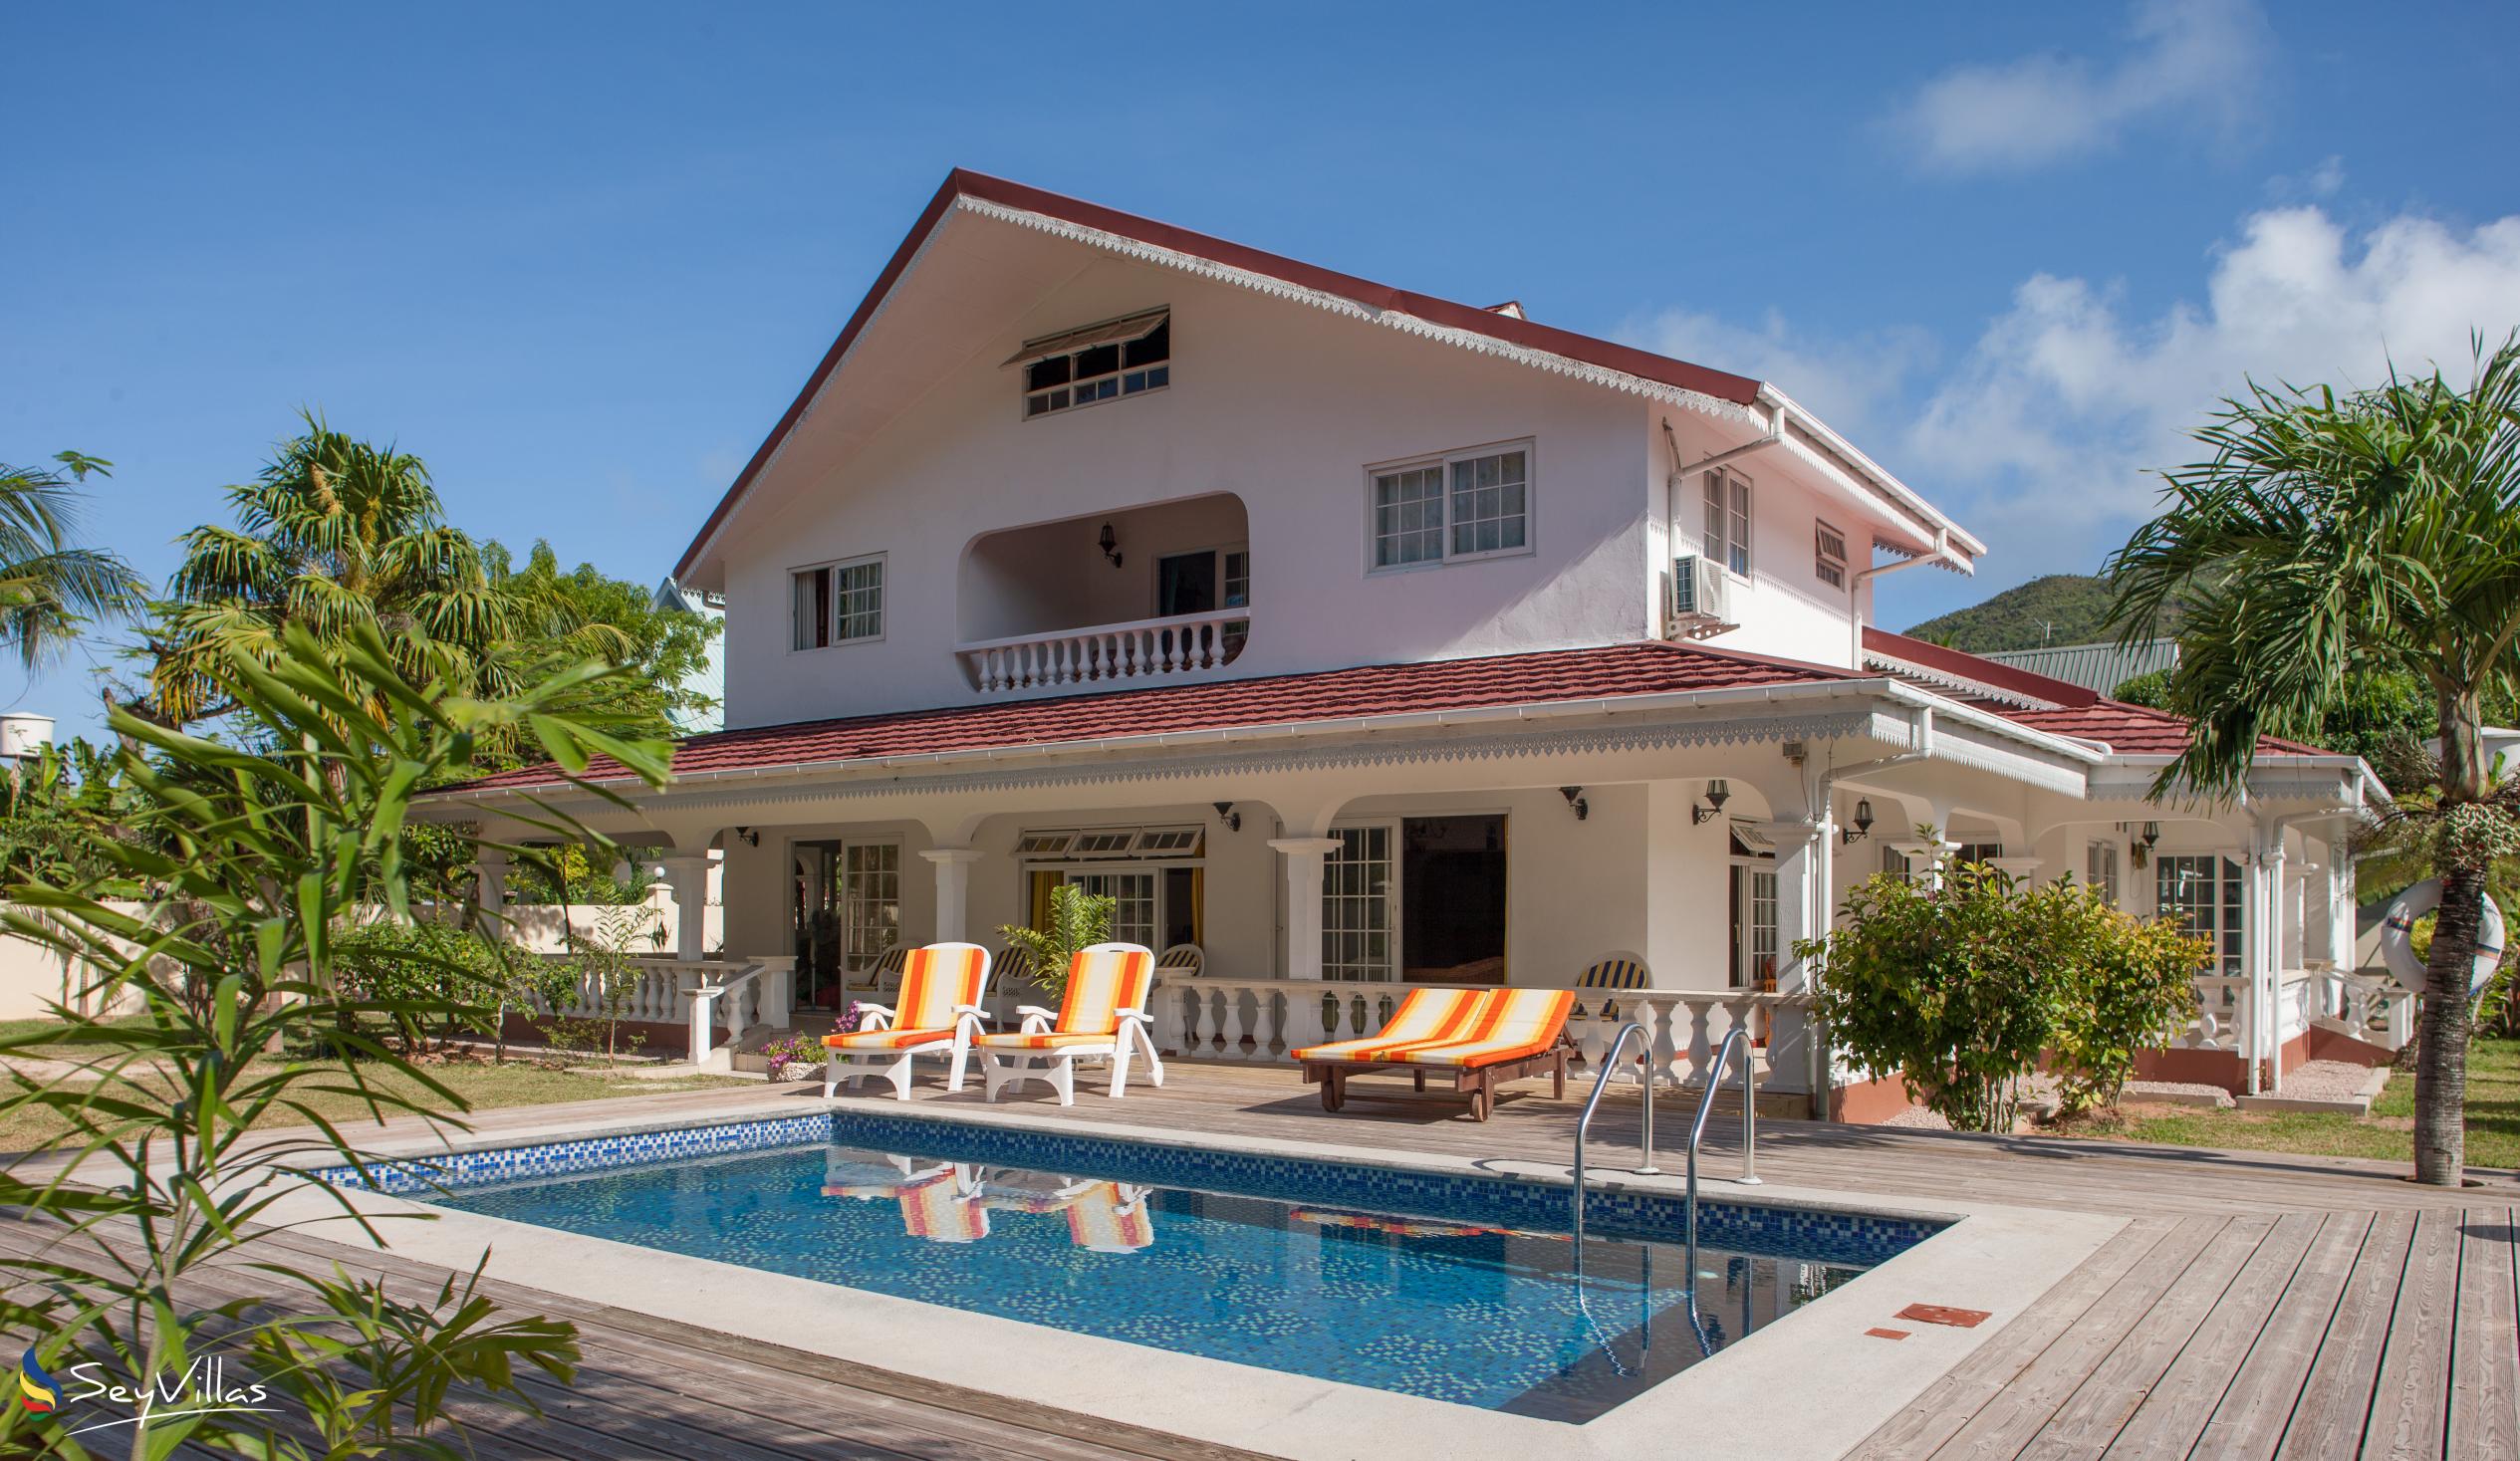 Foto 2: Villa Confort - Aussenbereich - Praslin (Seychellen)